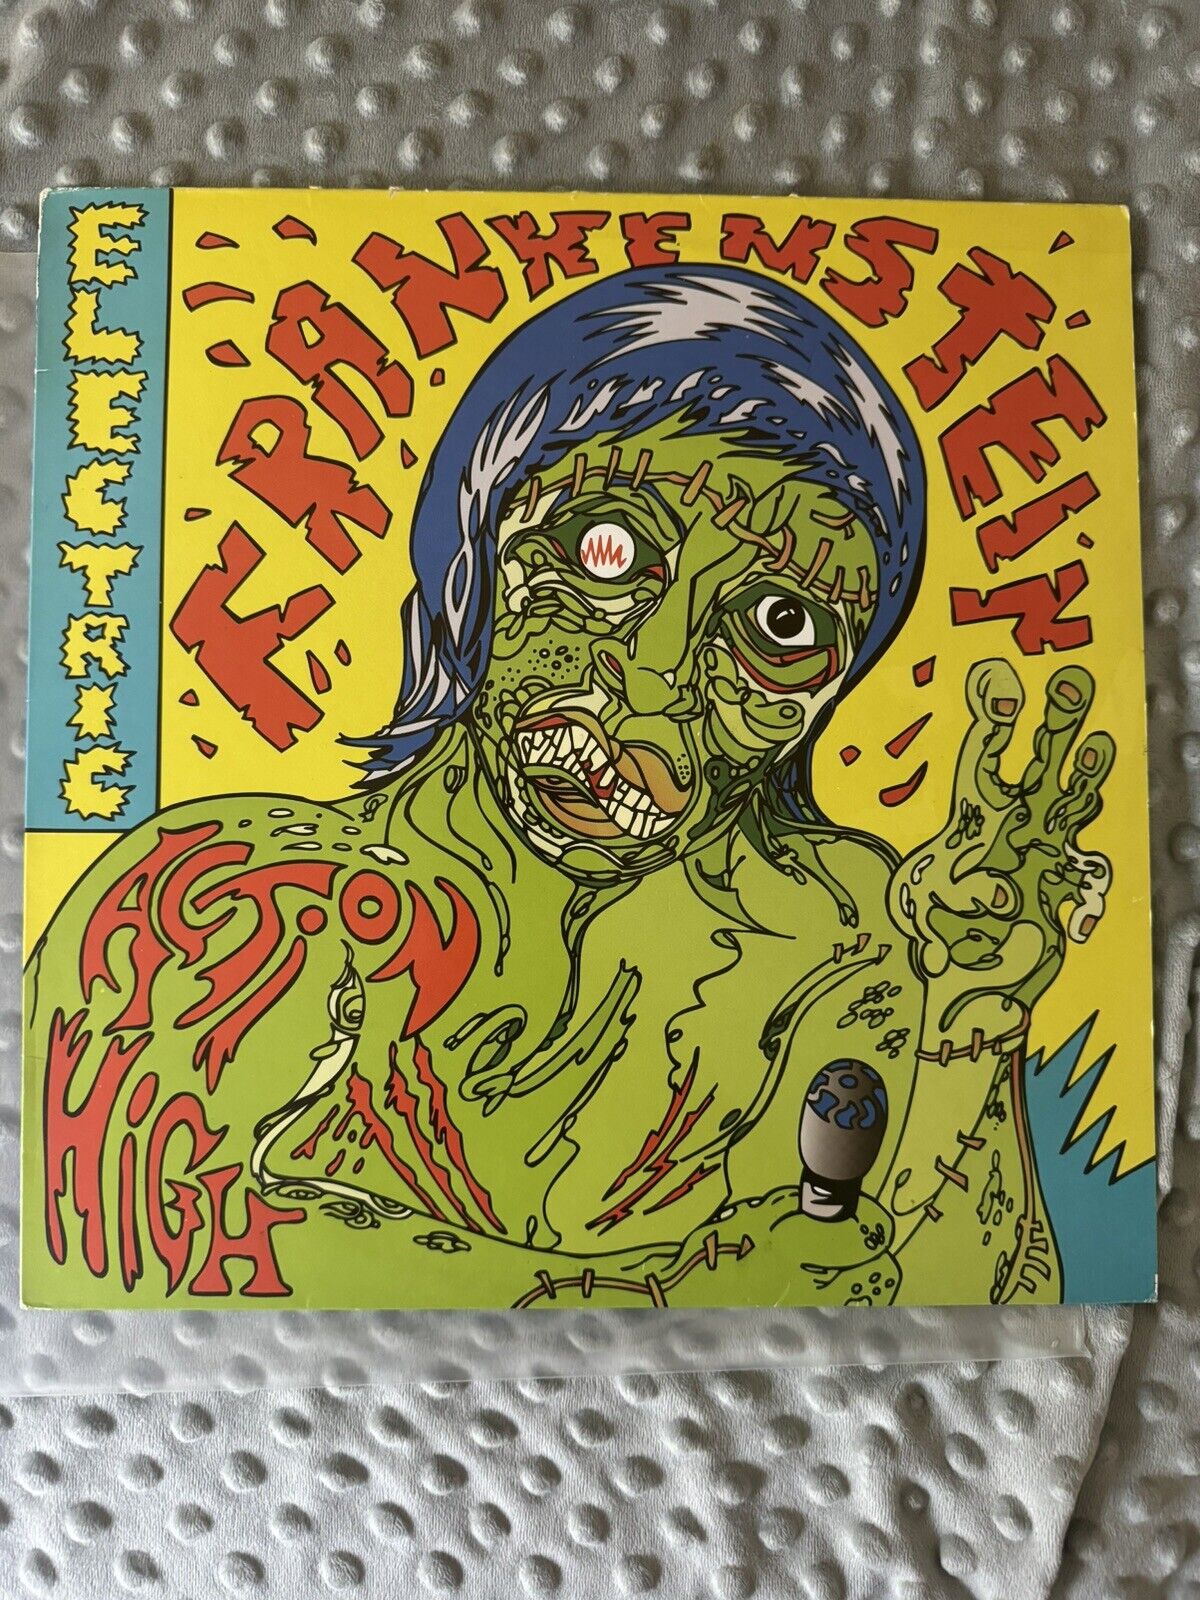 Electric Frankenstein-Action High UK Original Vinyl Garage Punk Rock EX LP